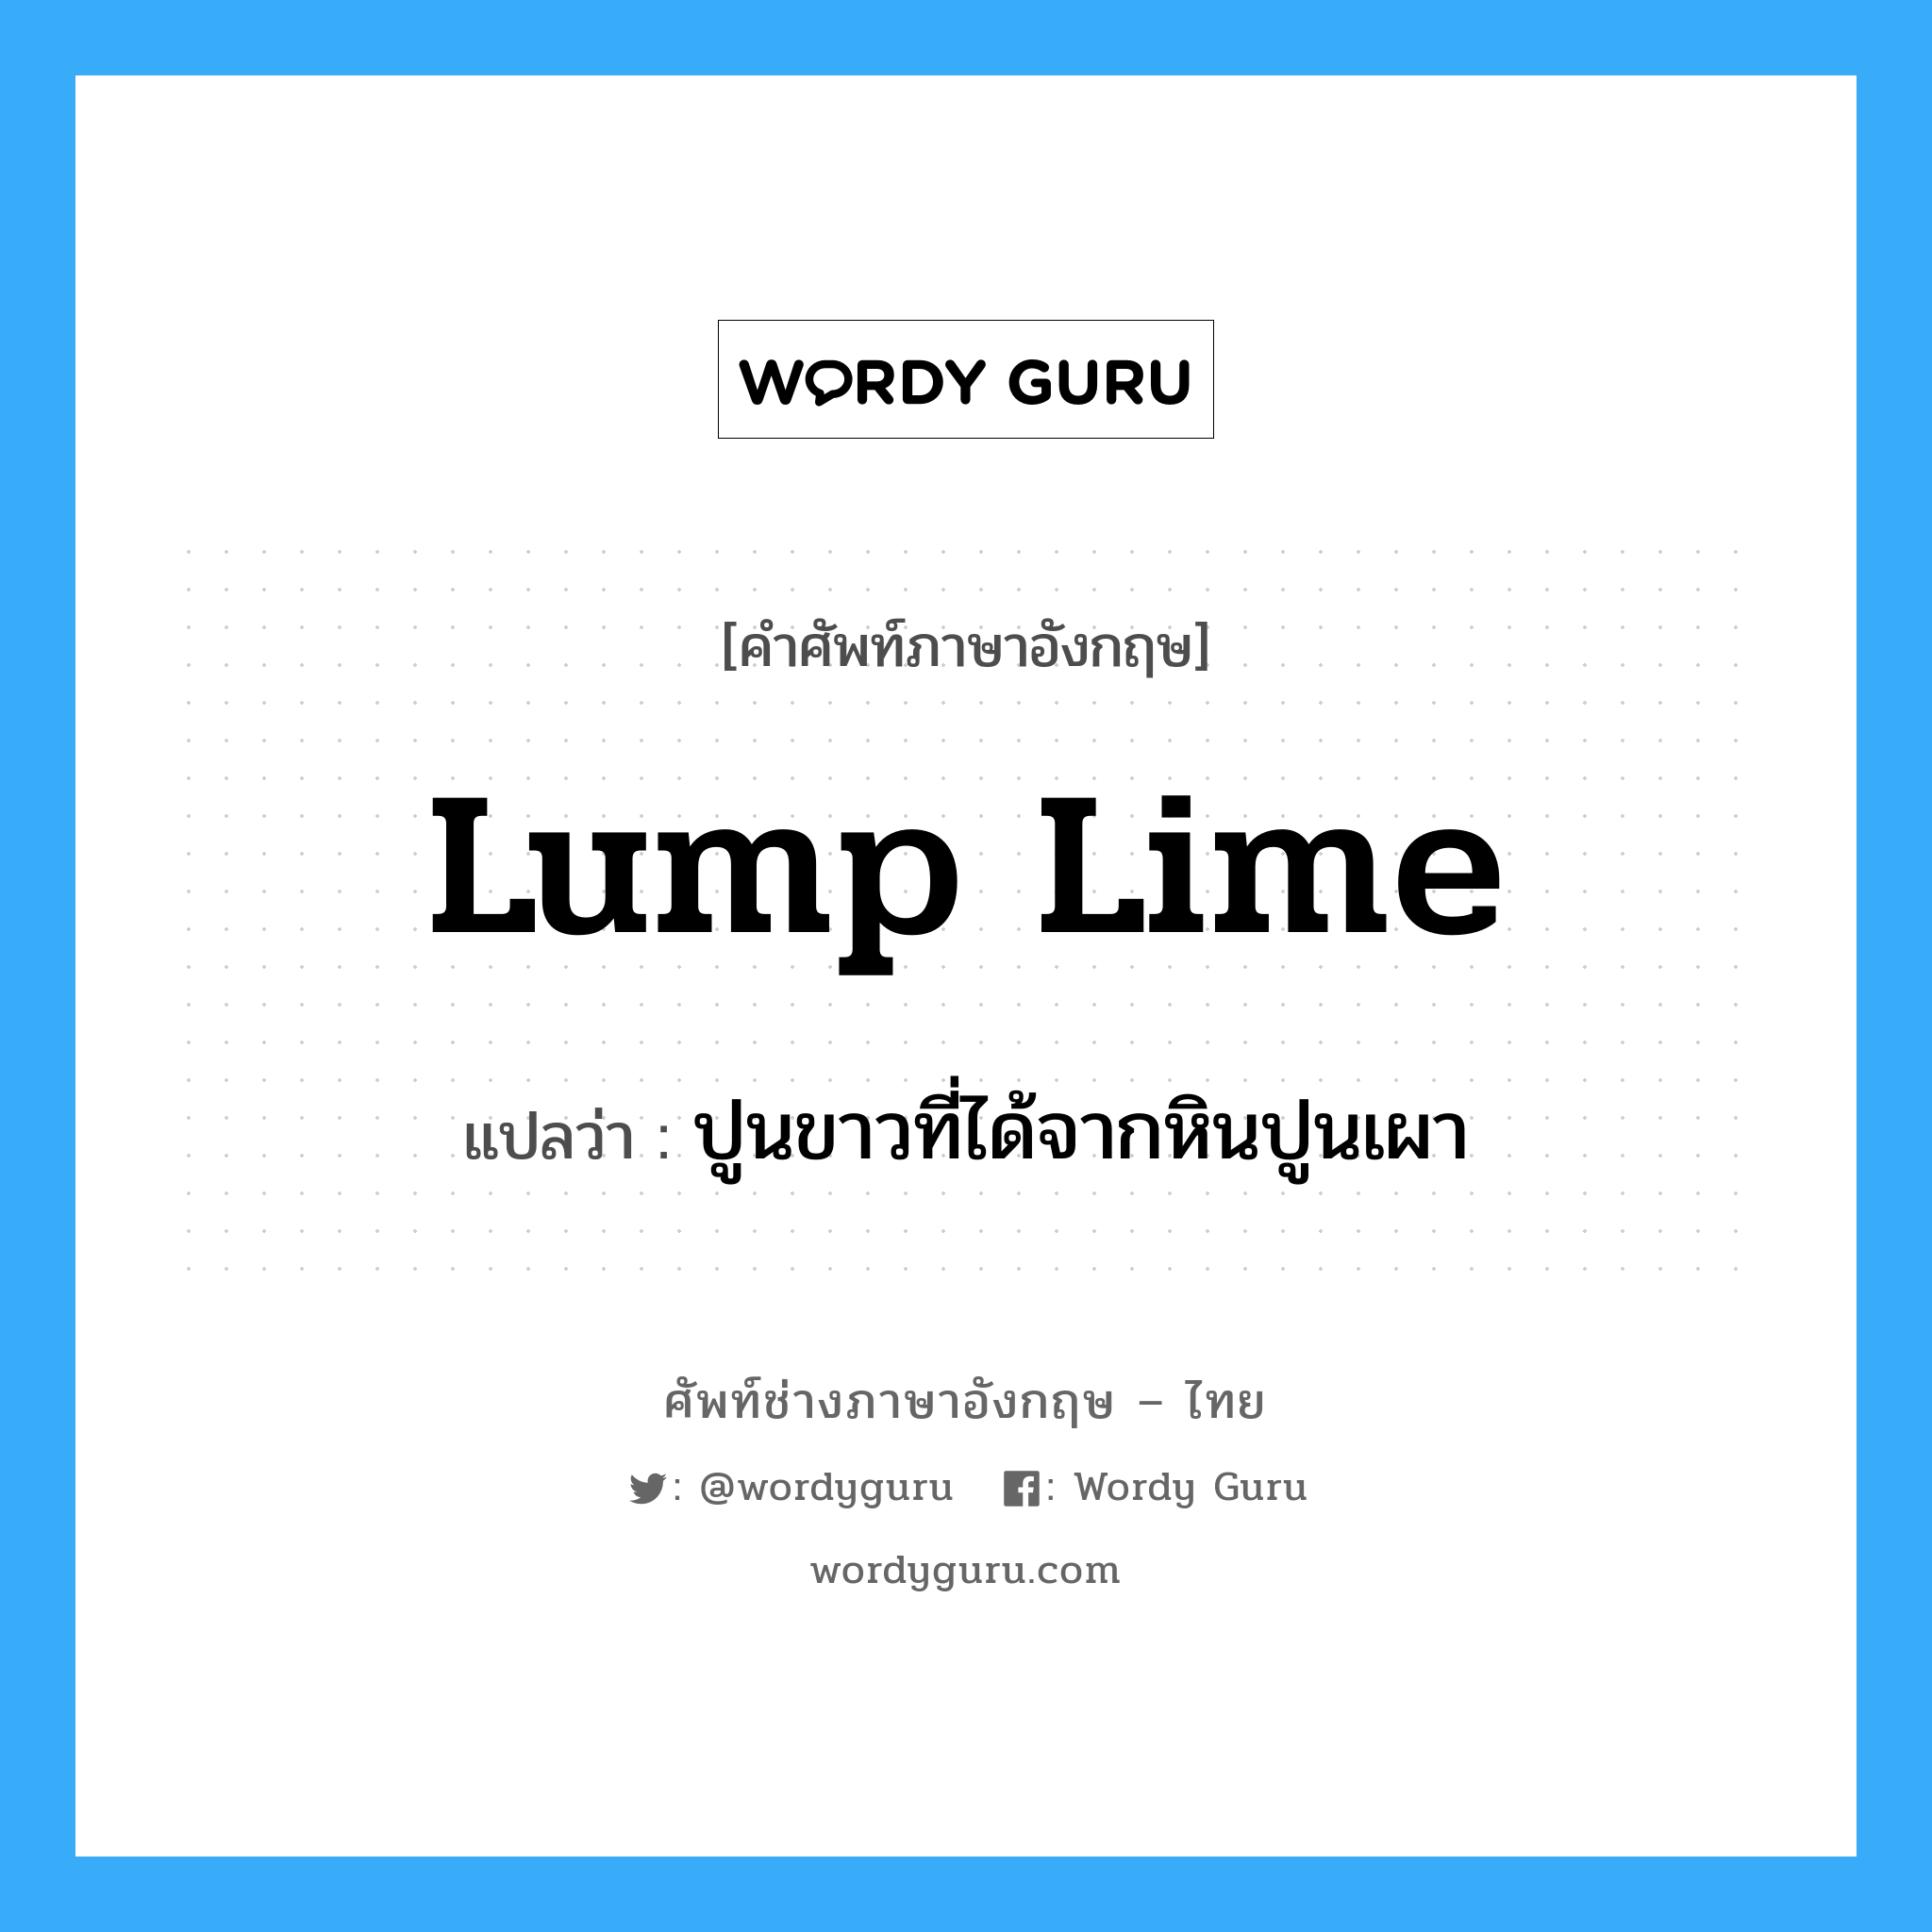 lump lime แปลว่า?, คำศัพท์ช่างภาษาอังกฤษ - ไทย lump lime คำศัพท์ภาษาอังกฤษ lump lime แปลว่า ปูนขาวที่ได้จากหินปูนเผา